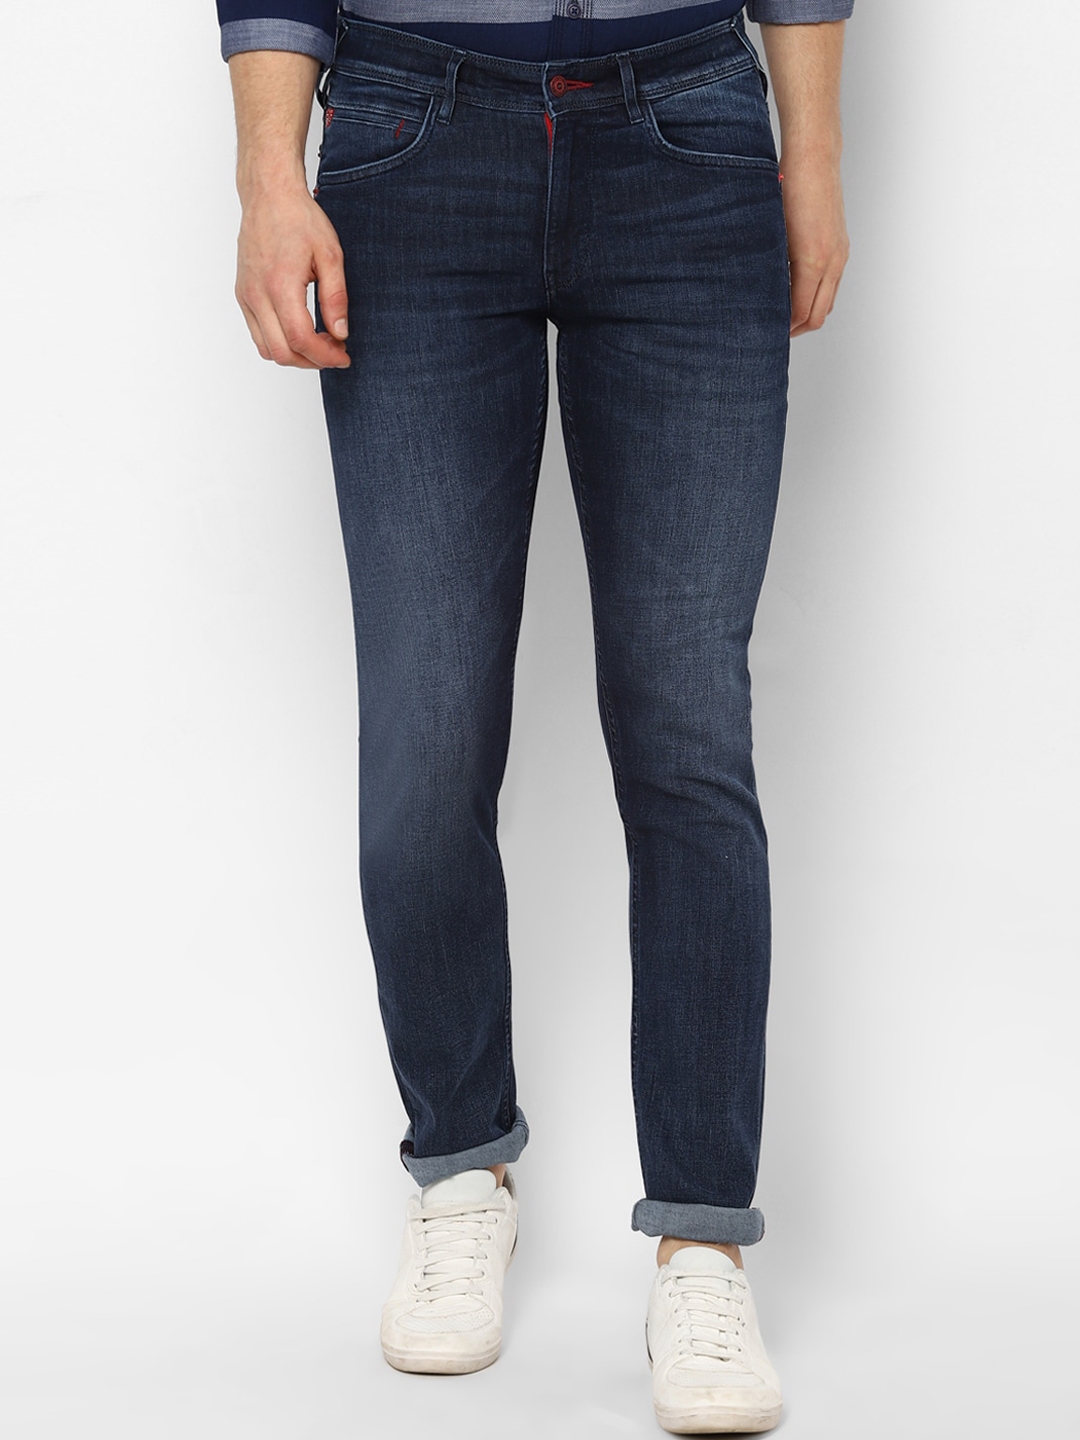 Buy Allen Solly Men Navy Blue Skinny Fit Mid Rise Clean Look Jeans ...